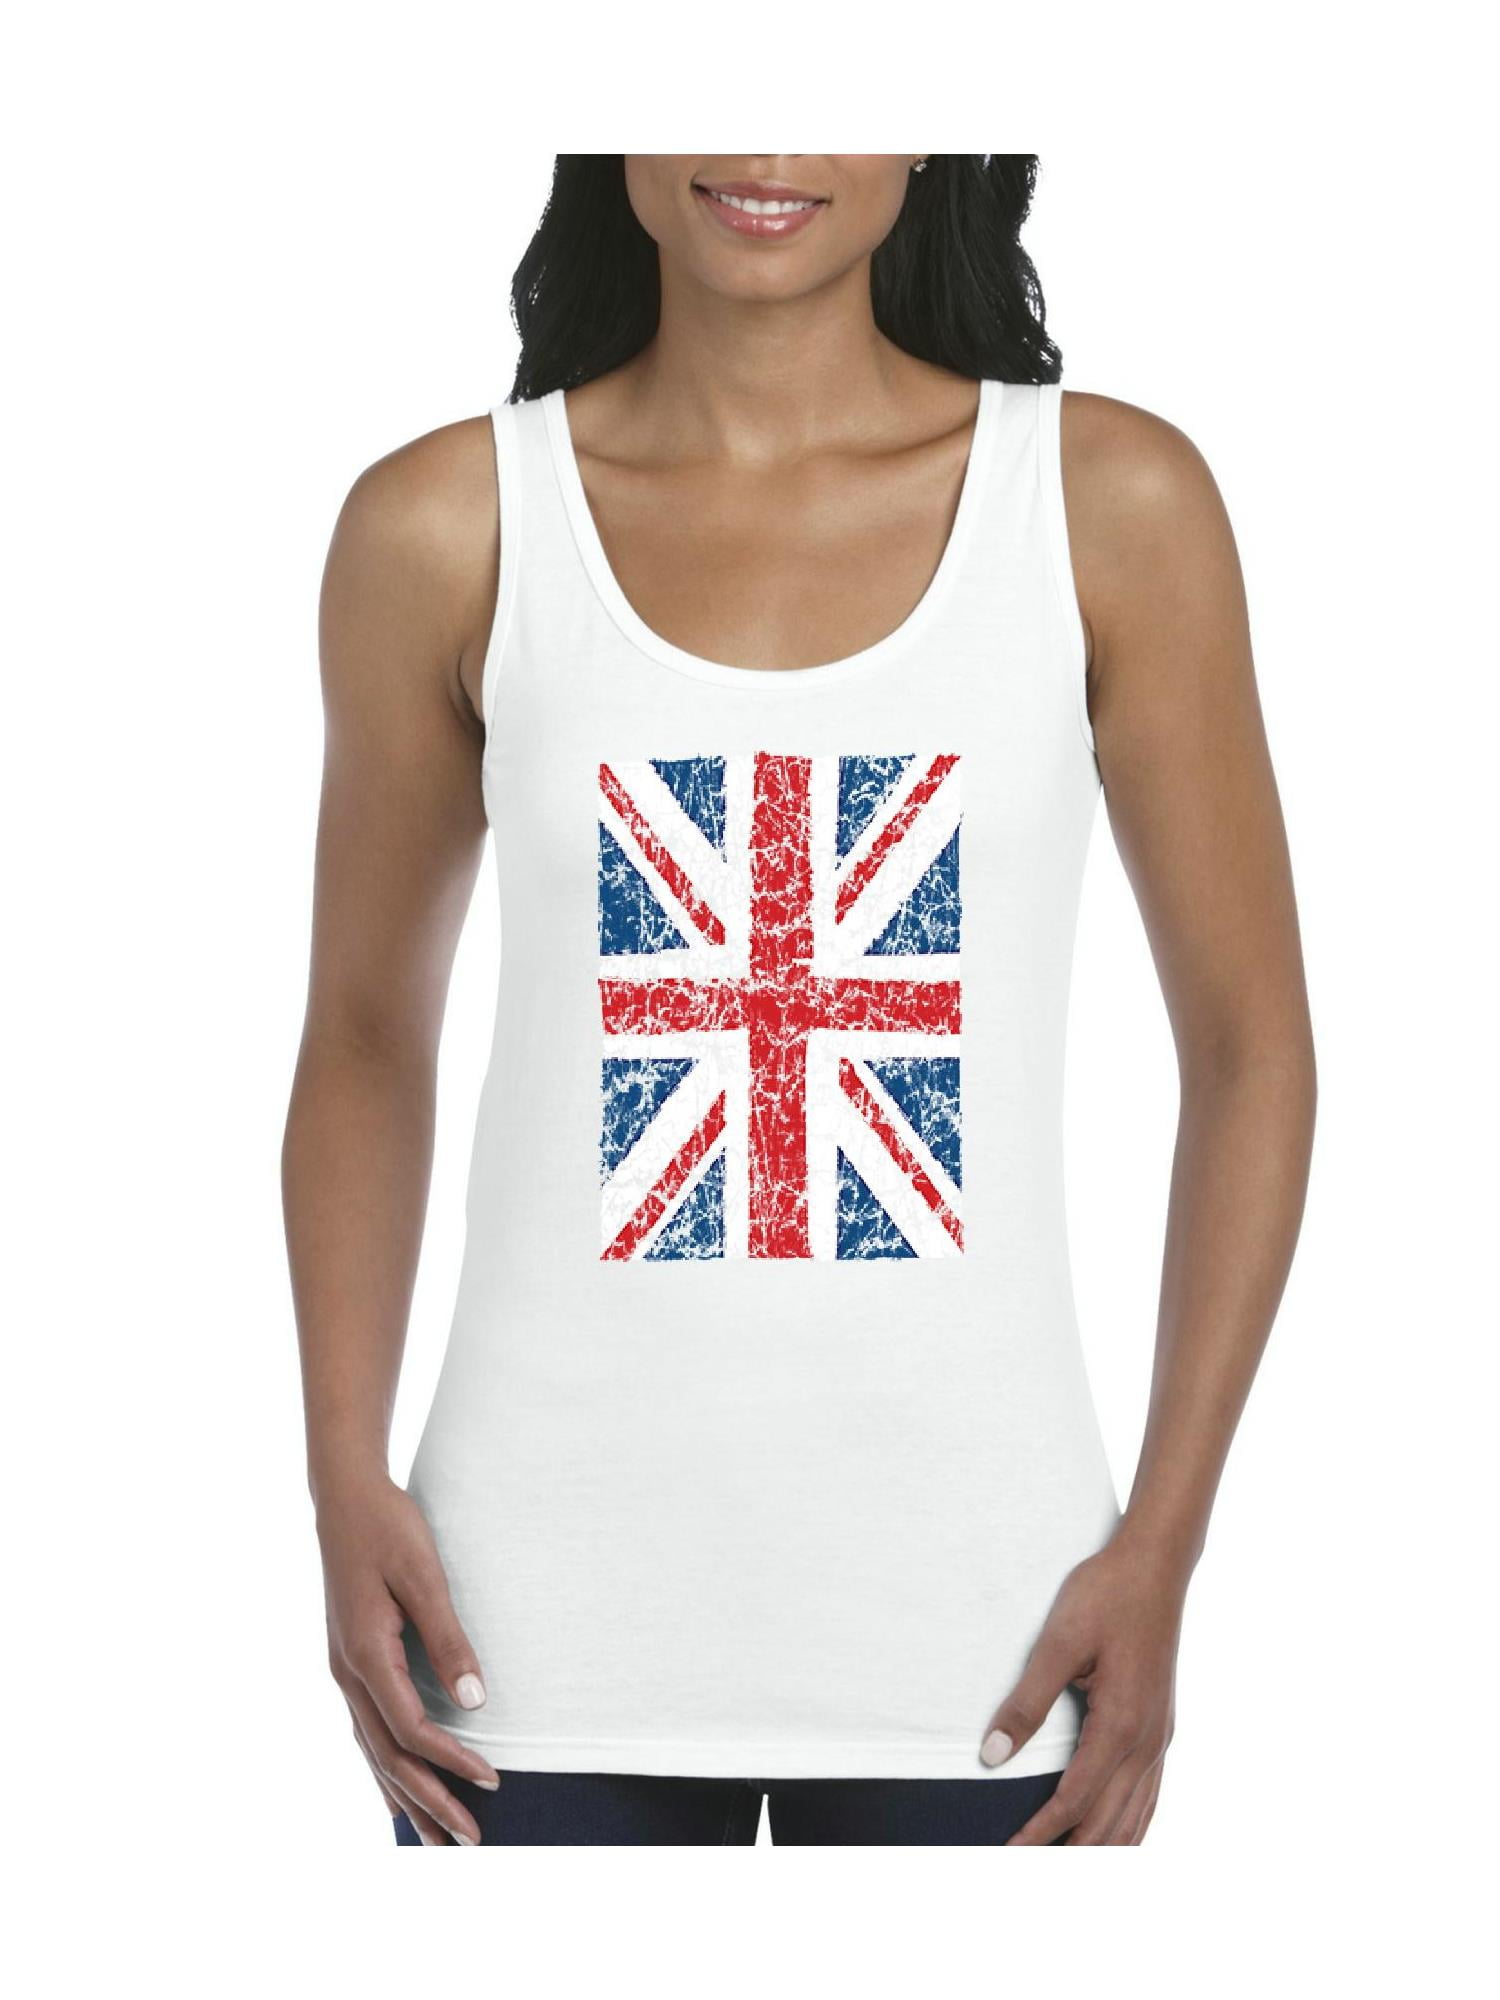 Genbruge dæk Bevidst Womens Union Jack British Flag Tank Top - Walmart.com